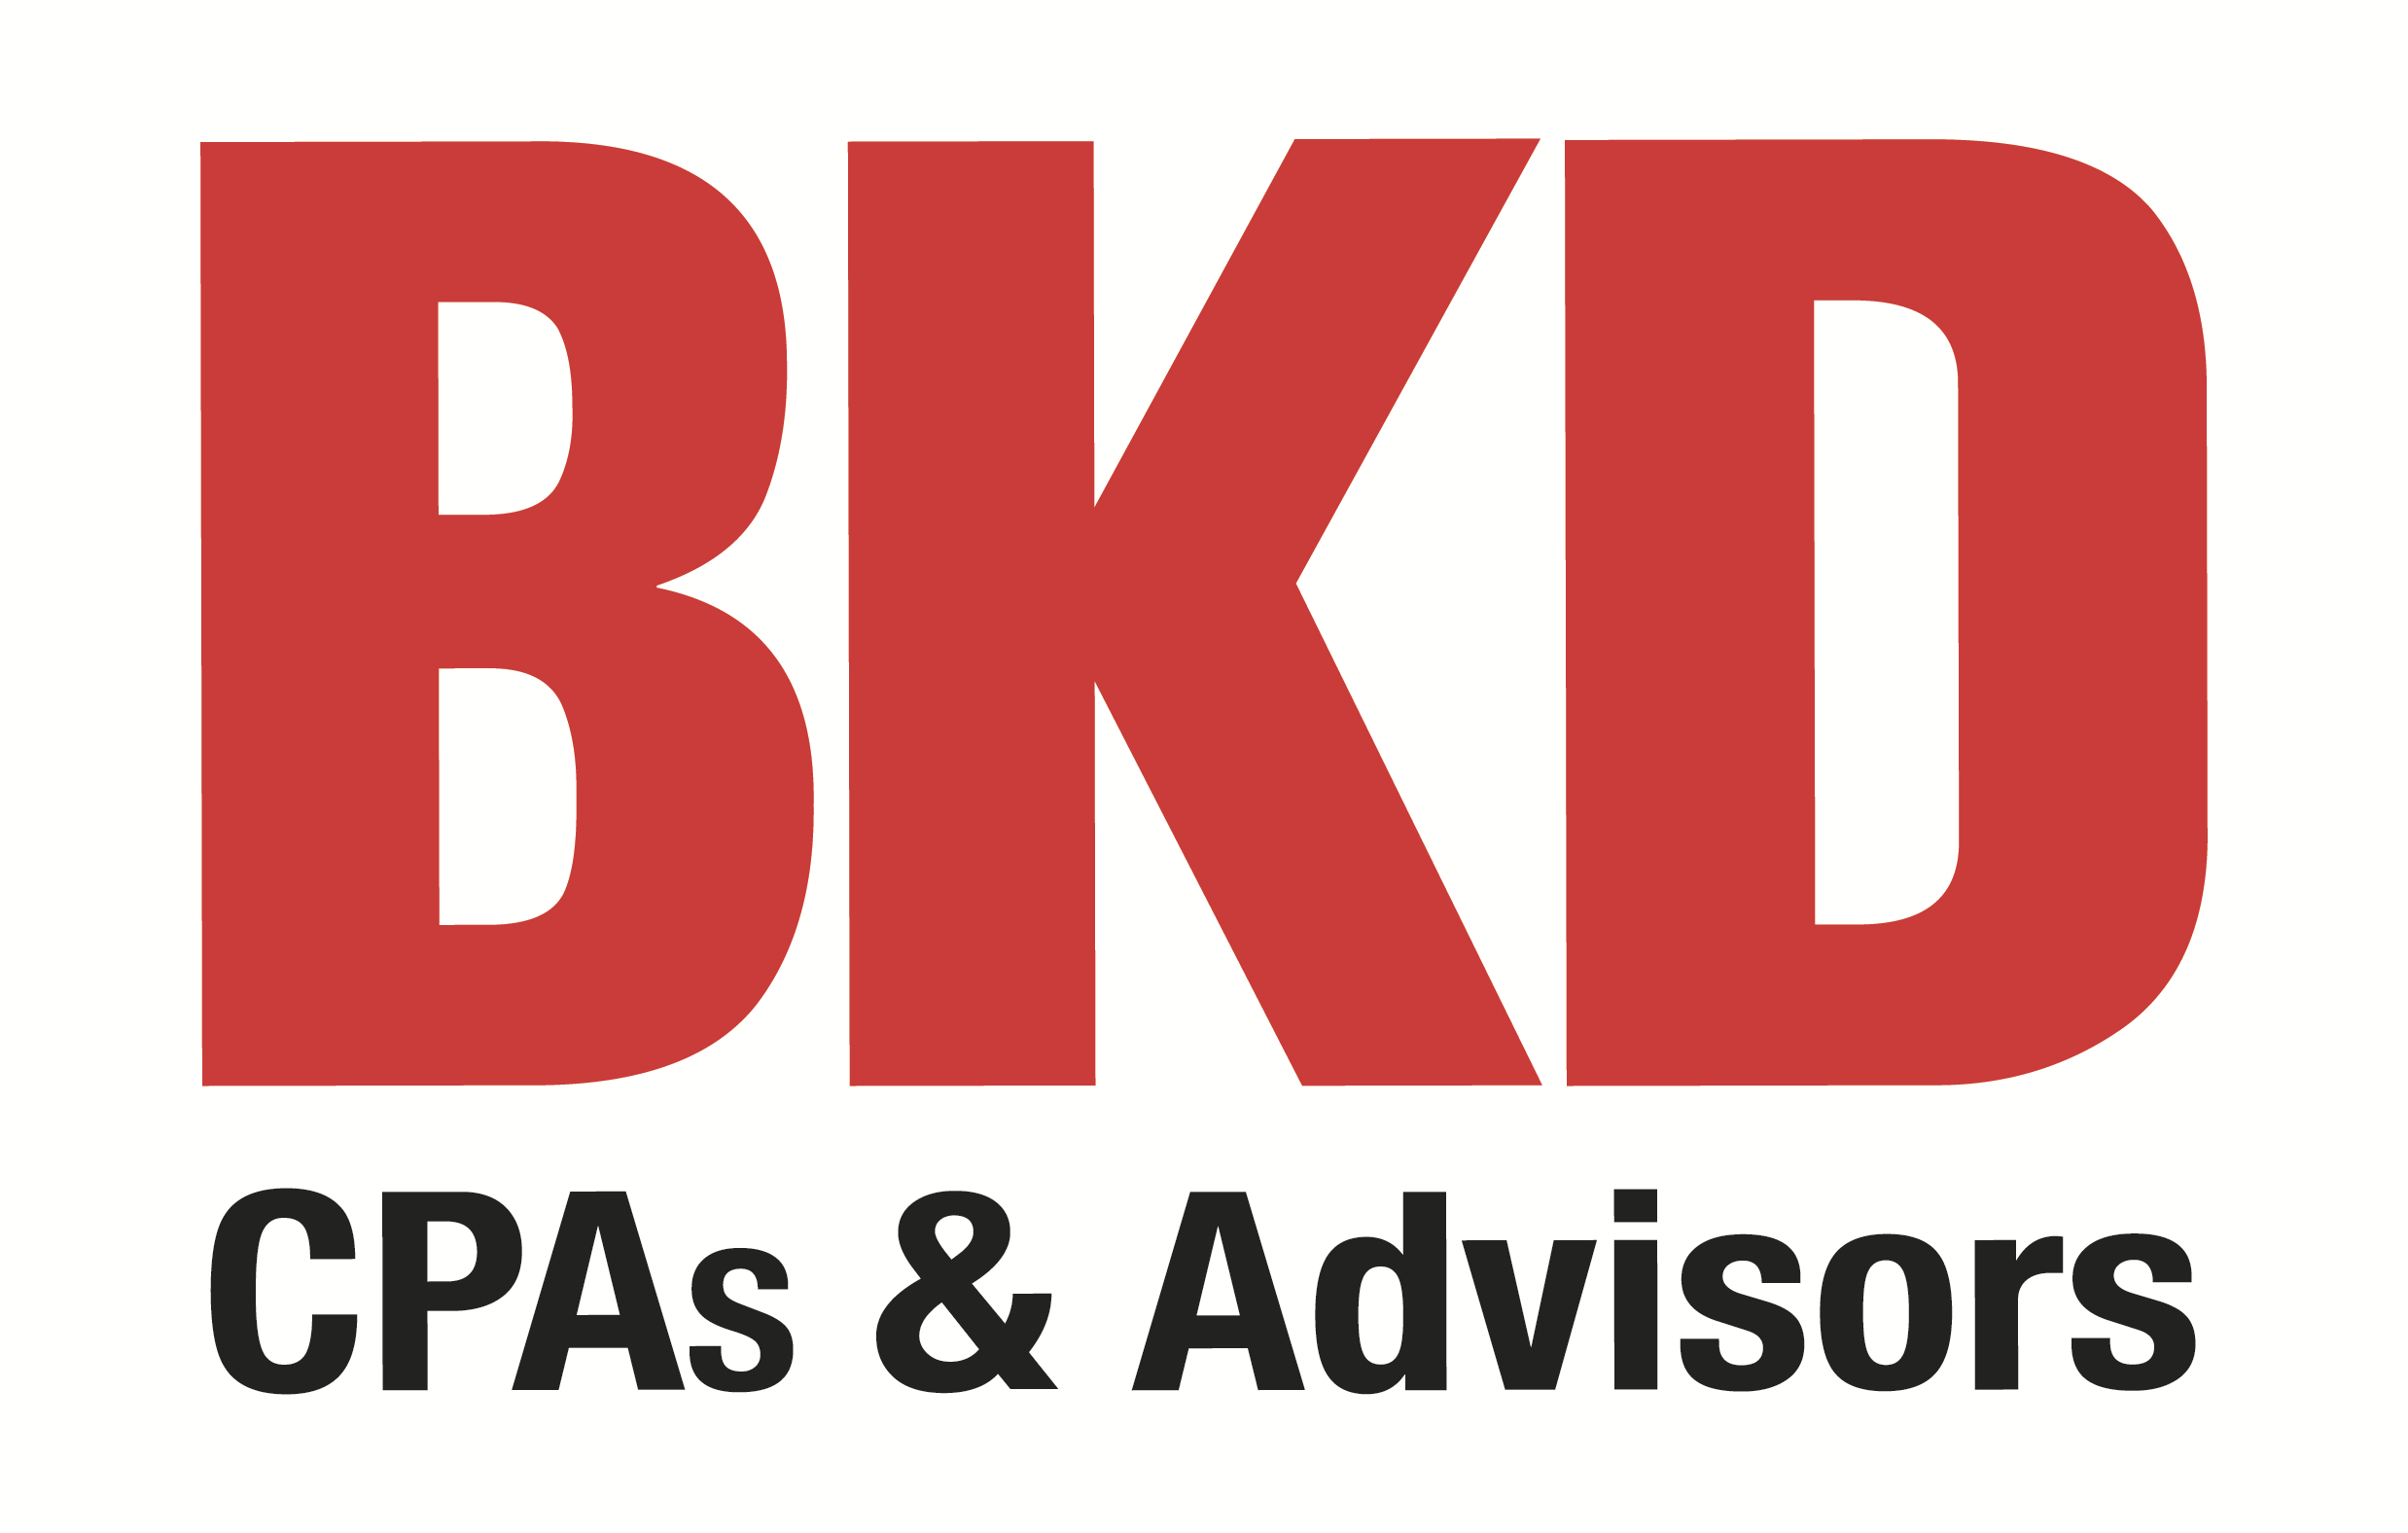 BKD CPAs & Advisors Company Logo